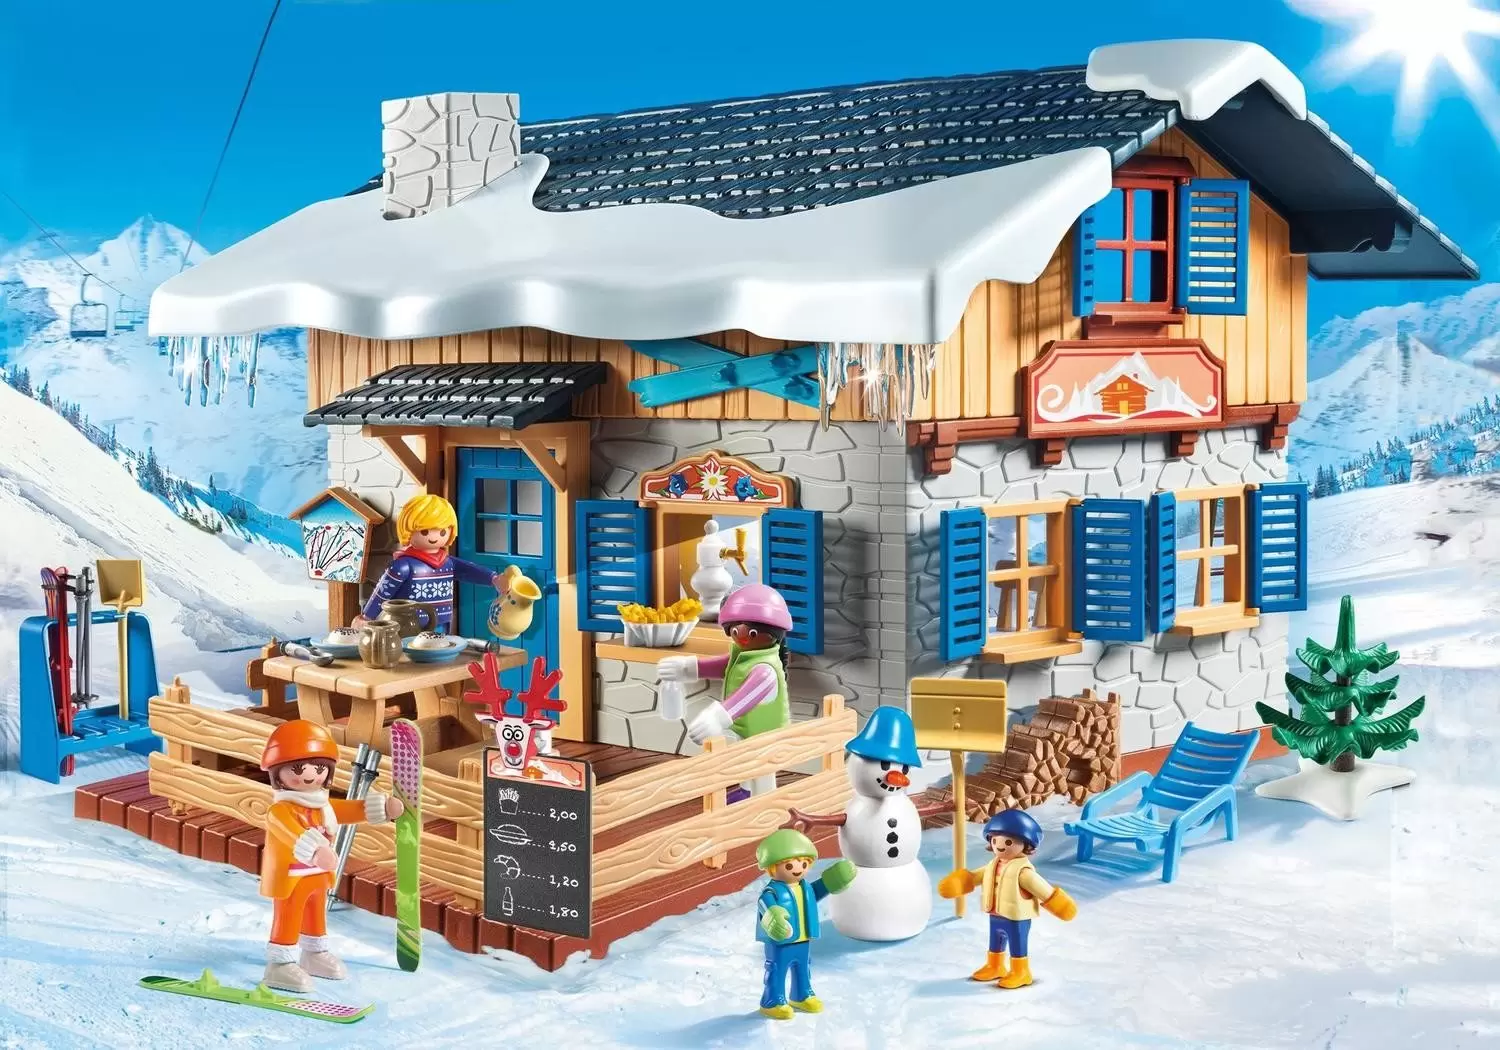 Enfants avec boules de neige - Playmobil Sports d'hiver 9283